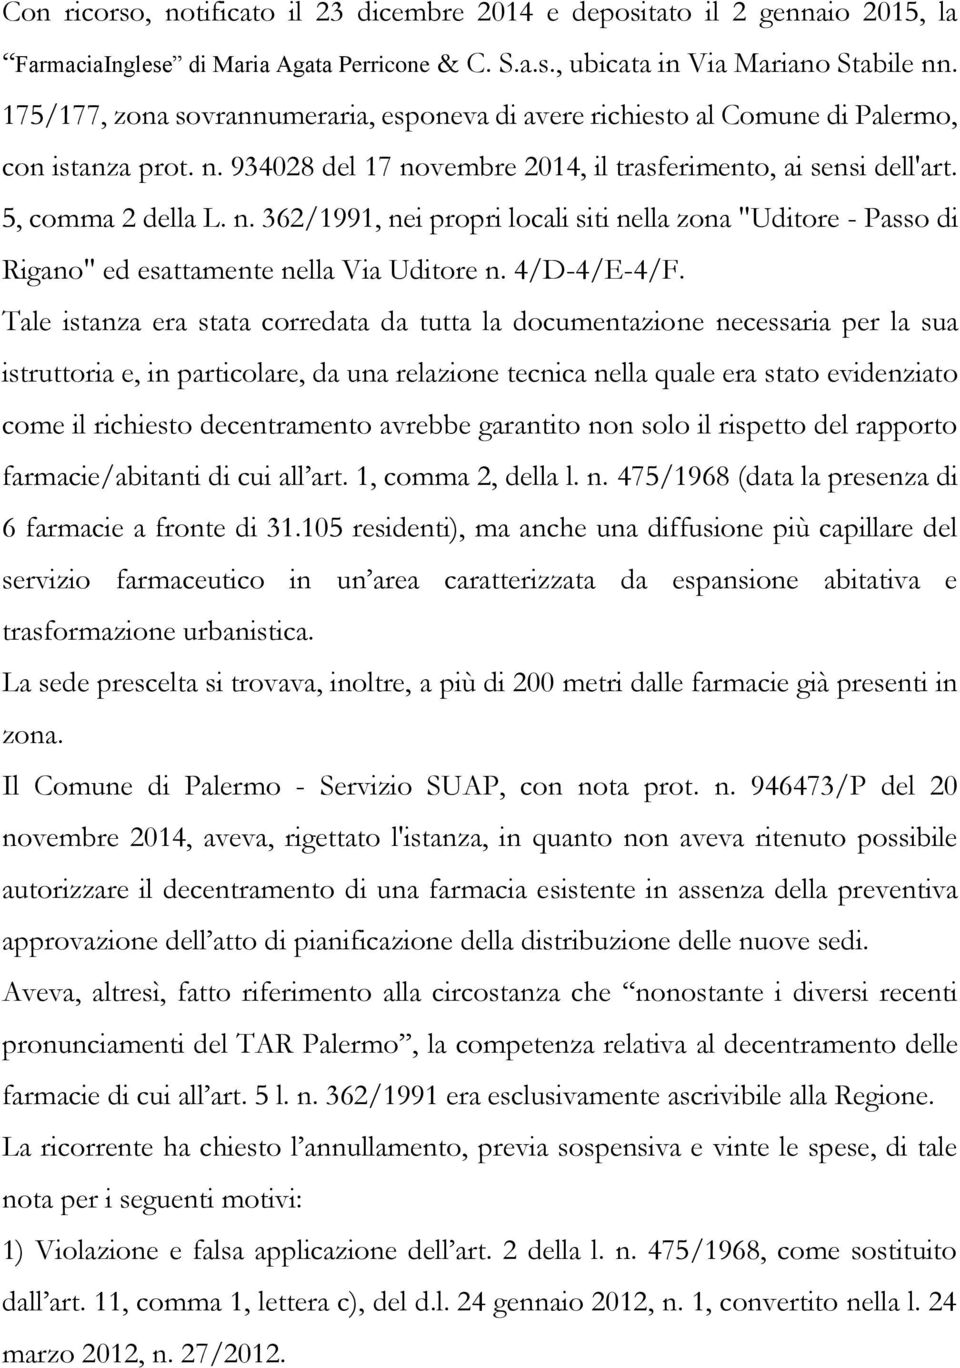 934028 del 17 novembre 2014, il trasferimento, ai sensi dell'art. 5, comma 2 della L. n. 362/1991, nei propri locali siti nella zona "Uditore - Passo di Rigano" ed esattamente nella Via Uditore n.